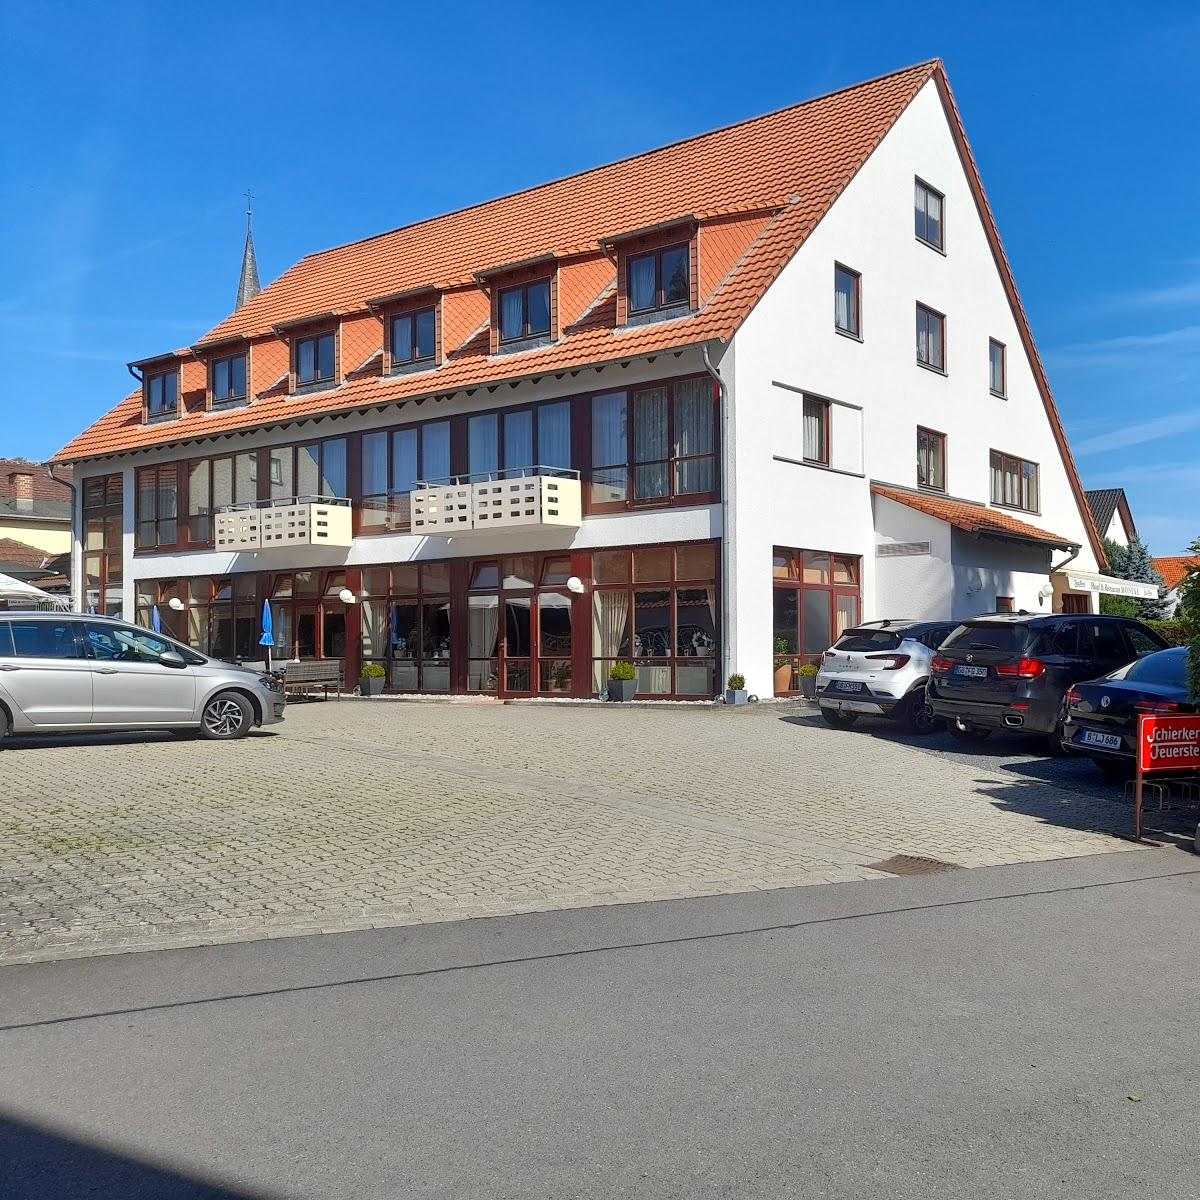 Restaurant "Hotel Zur Erholung" in Duderstadt